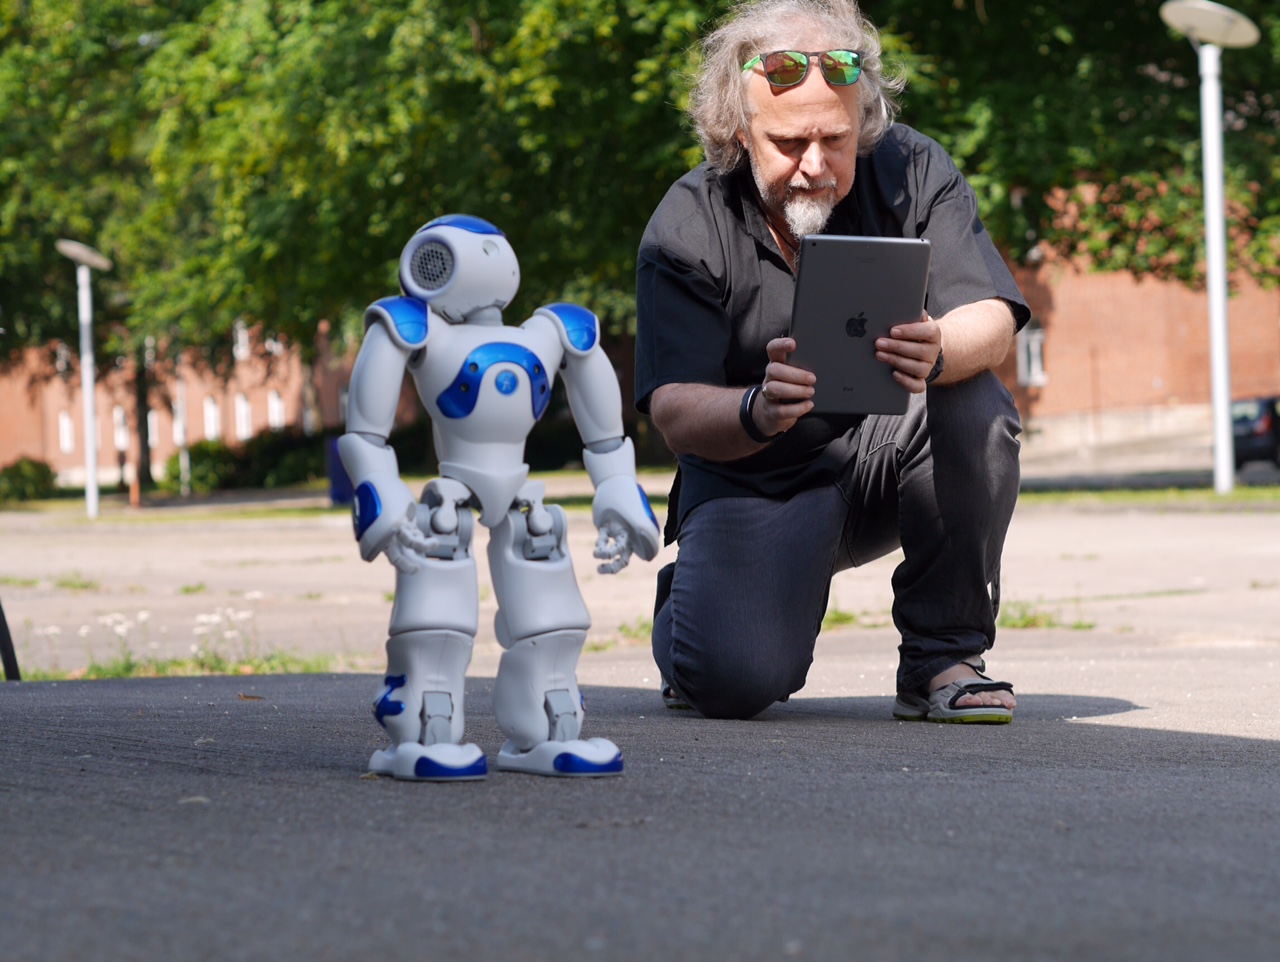 Ein Mann kniet mit einem Tablet neben einem knapp einen Meter großen Roboter.